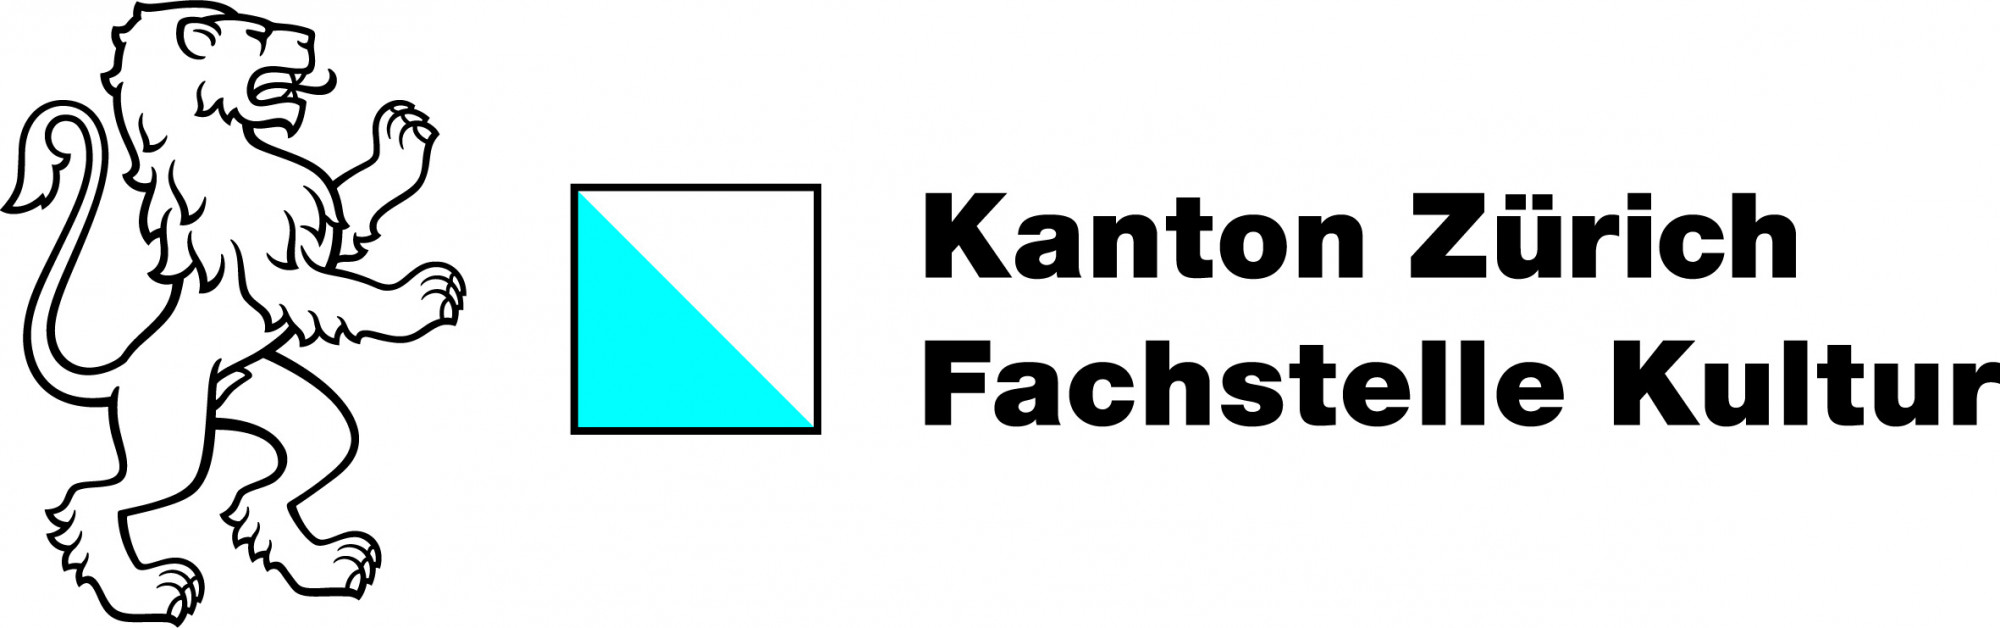 Kanton Zürich | Fachstelle Kultur